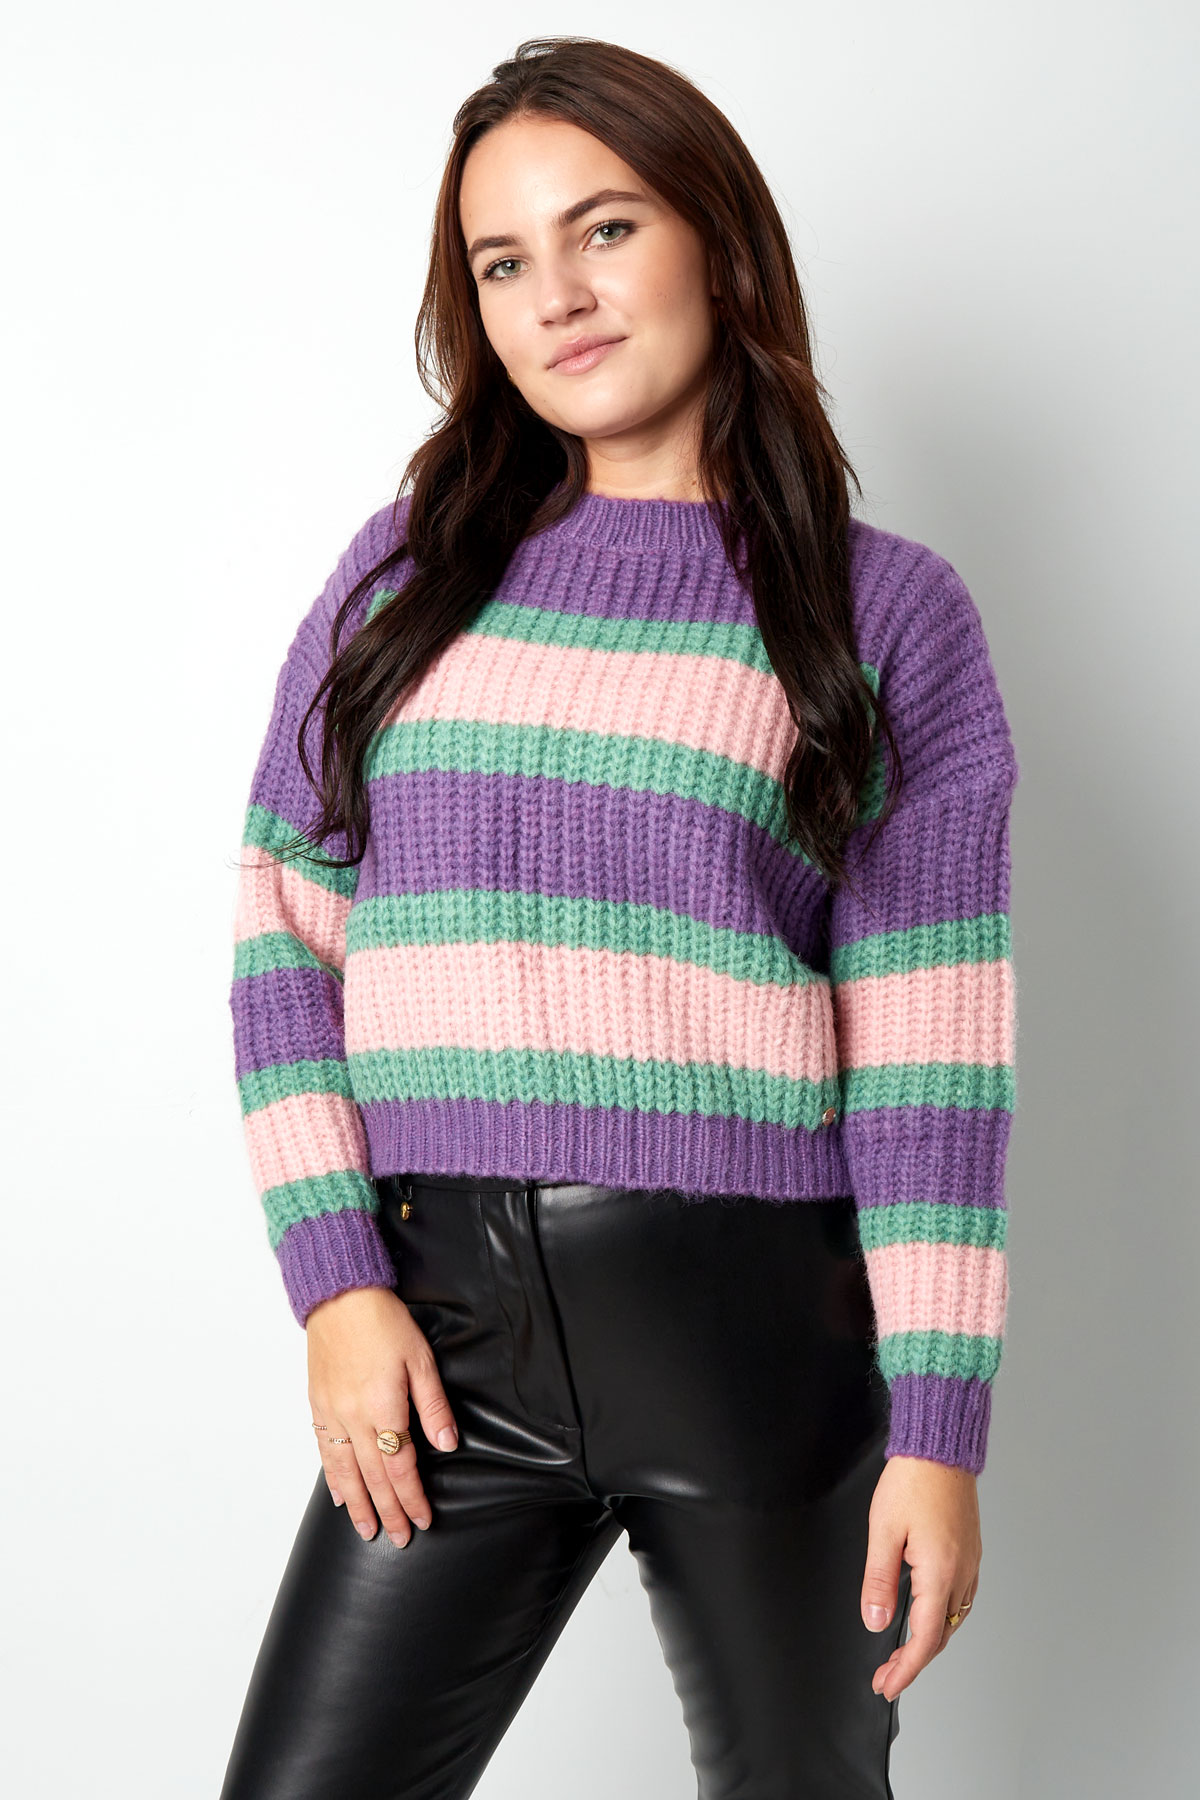 Gestrickter dreifarbiger Pullover mit Streifen – rosa lila h5 Bild3